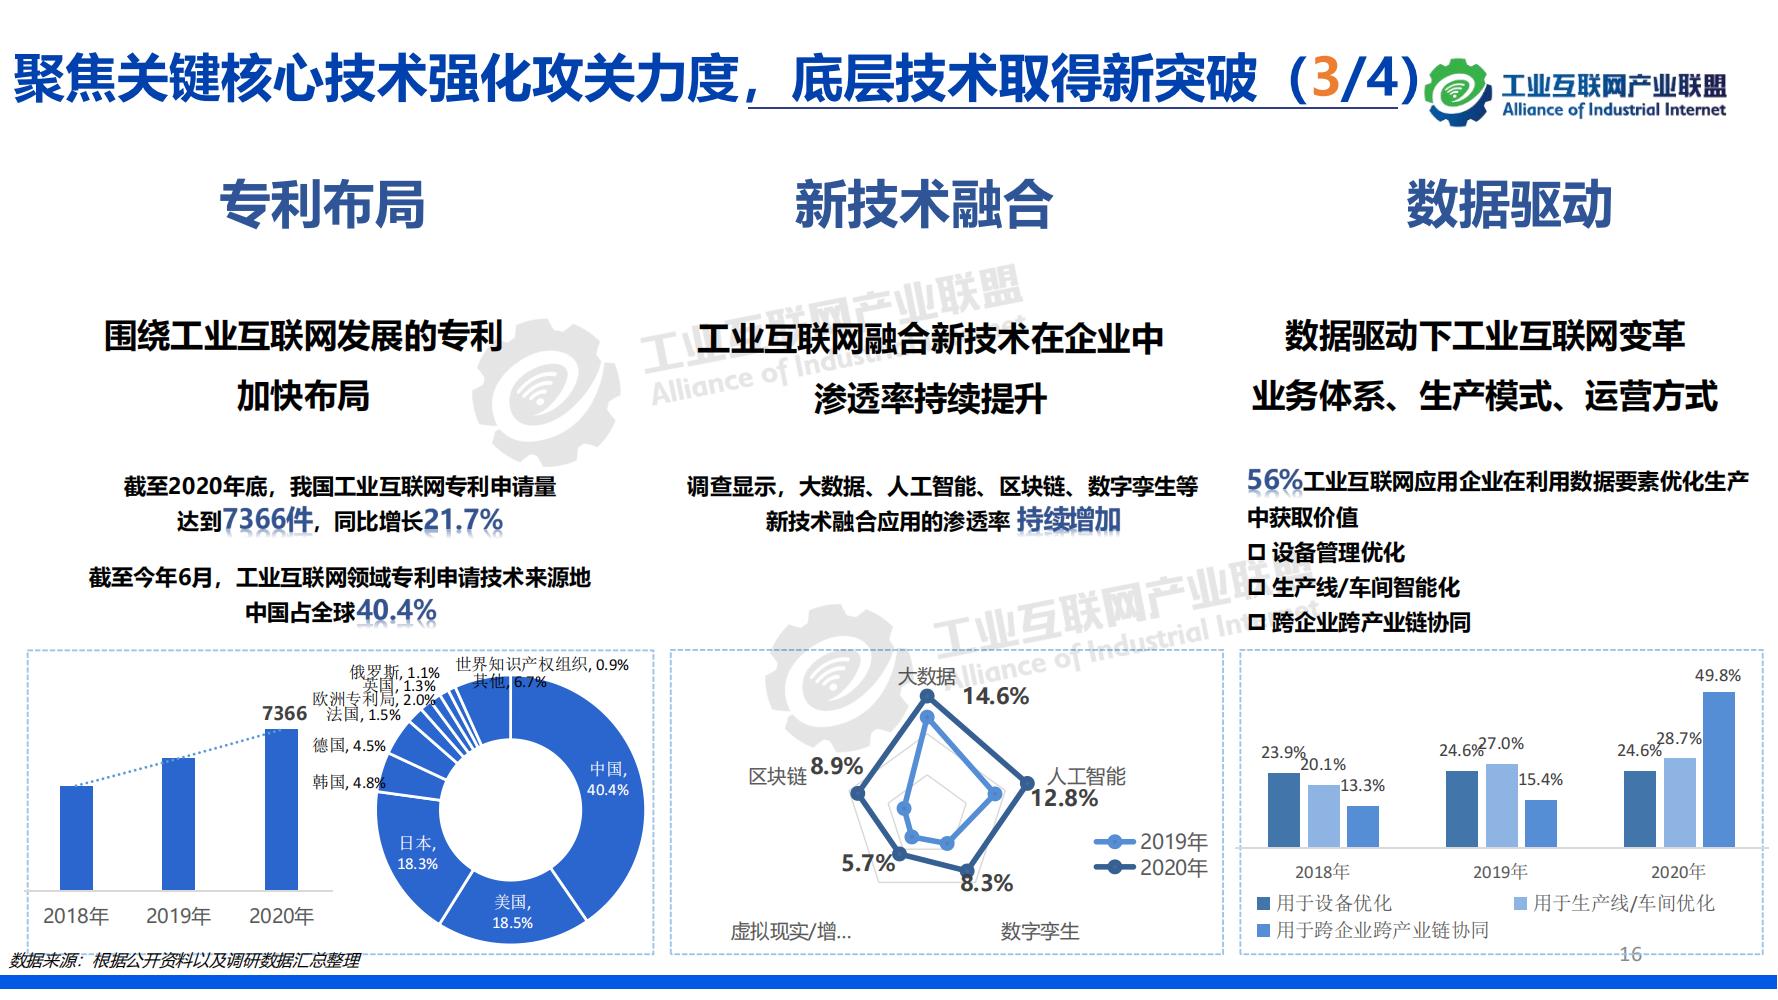 1-中国工业互联网发展成效评估报告-水印_15.jpg